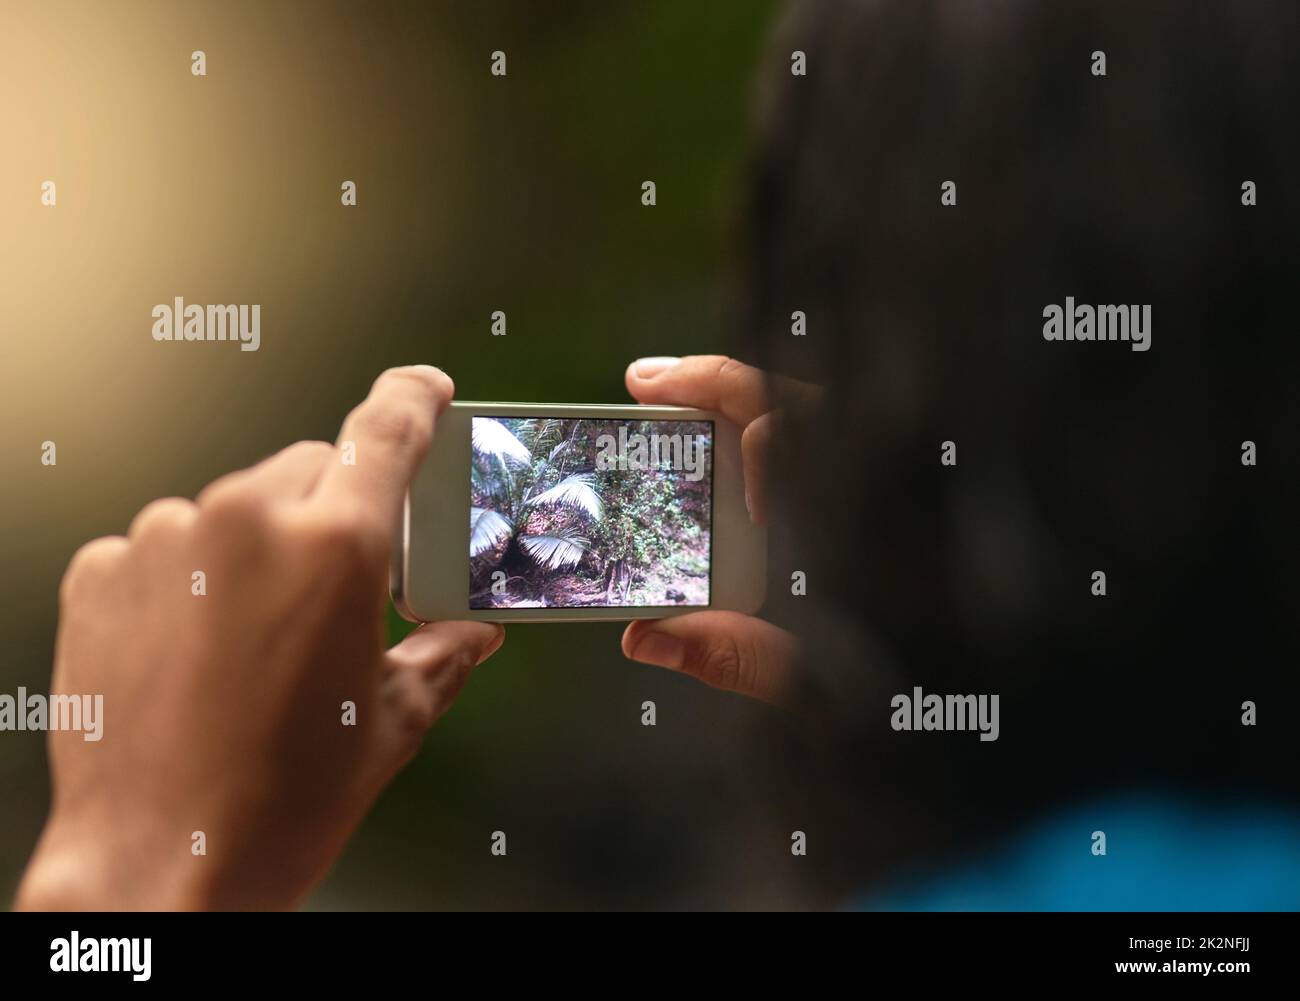 La technologie rencontre la nature. Vue arrière d'une personne non identifiable prenant une photo avec un téléphone portable tout en explorant la forêt. Banque D'Images